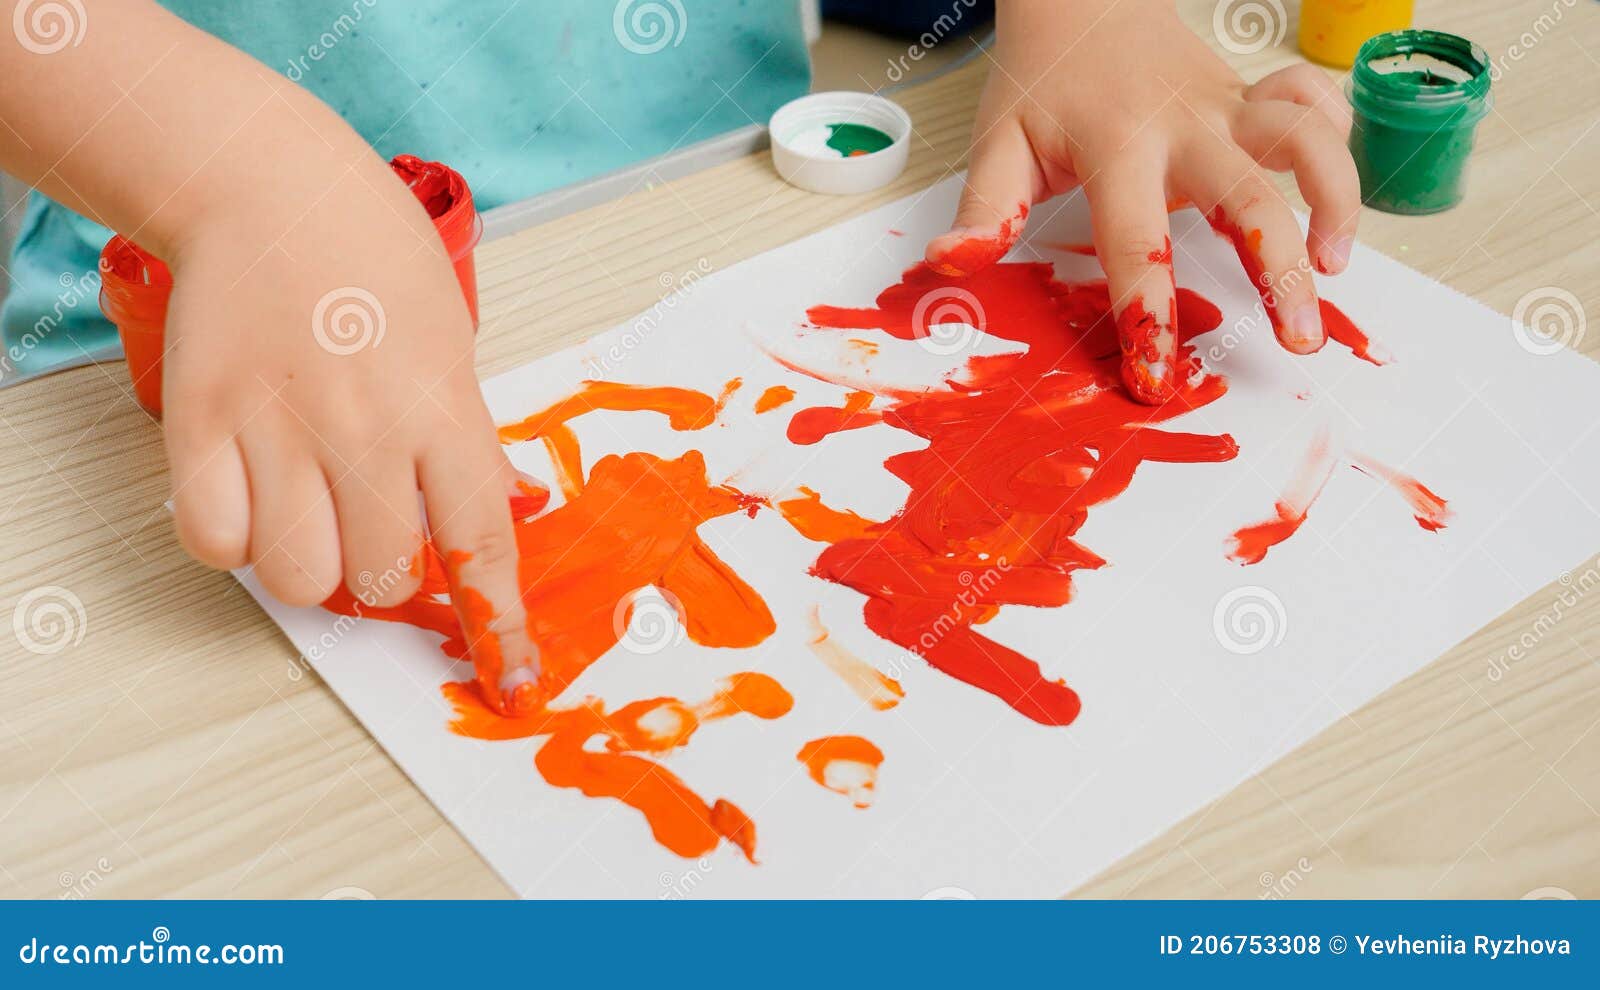 O Dedo Da Criança Está Mostrando a Cor Branca De Pinturas Da